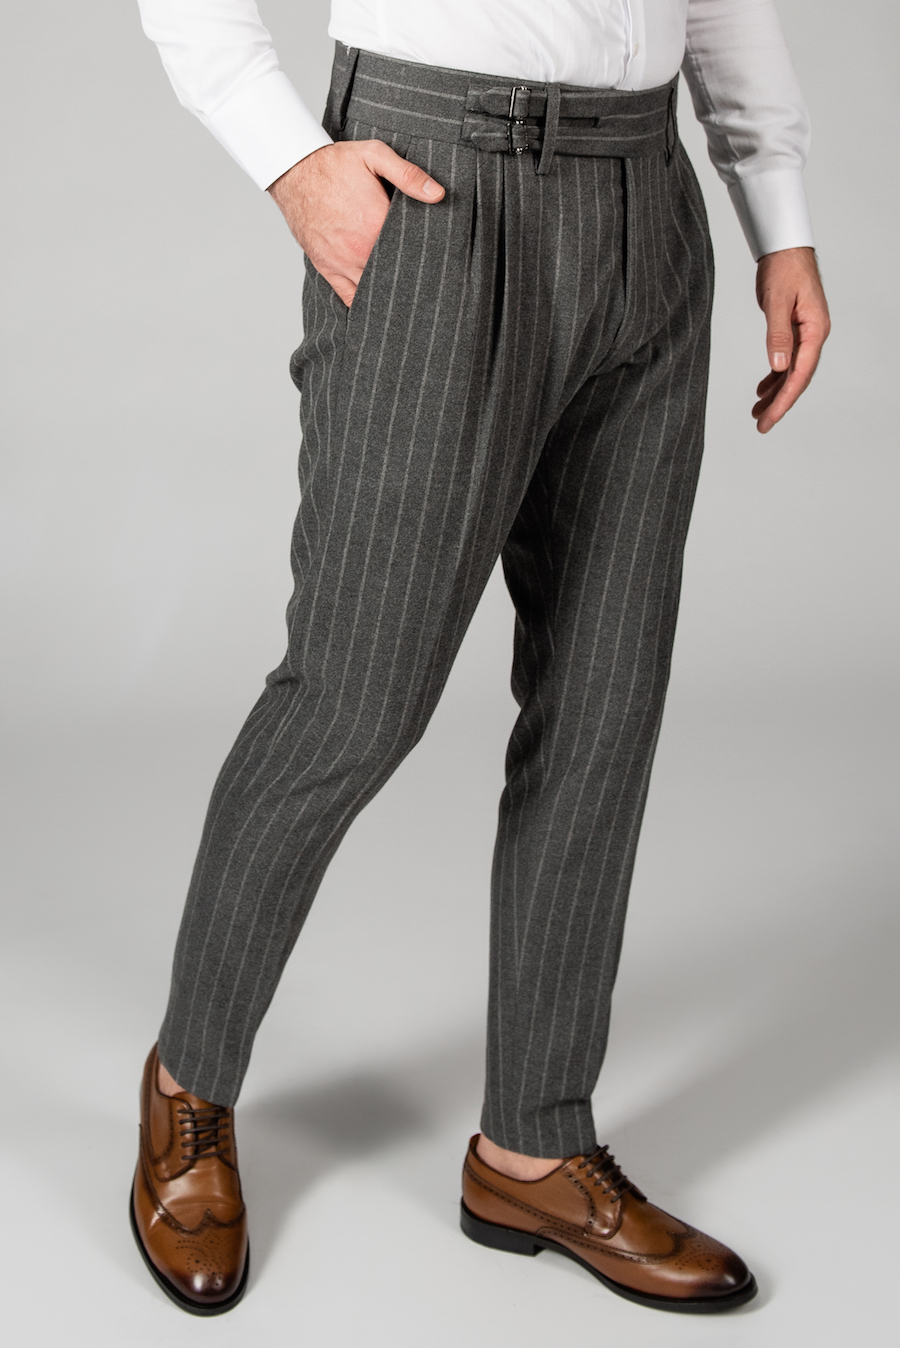 Стильные мужские брюки в полоску. Арт.:6-1437-3 – купить в магазине мужскойодежды Smartcasuals